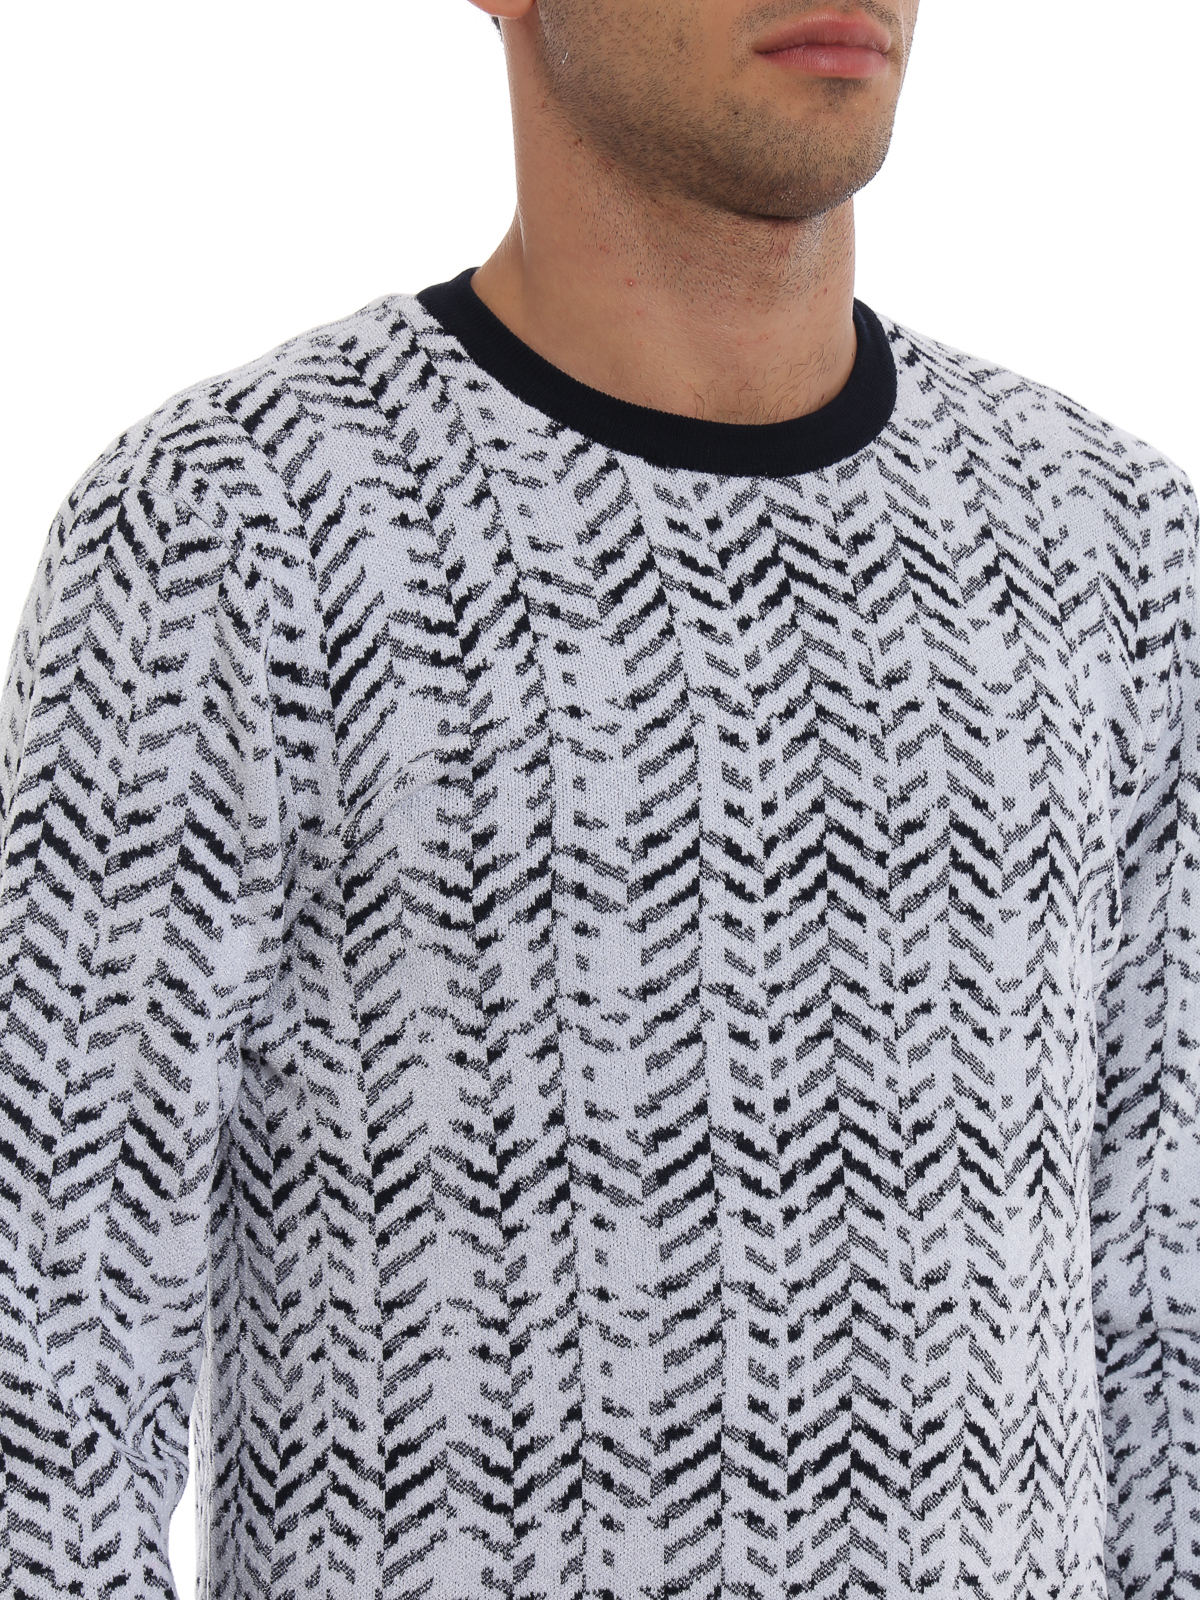 Giorgio Armani Jacquard Sweater